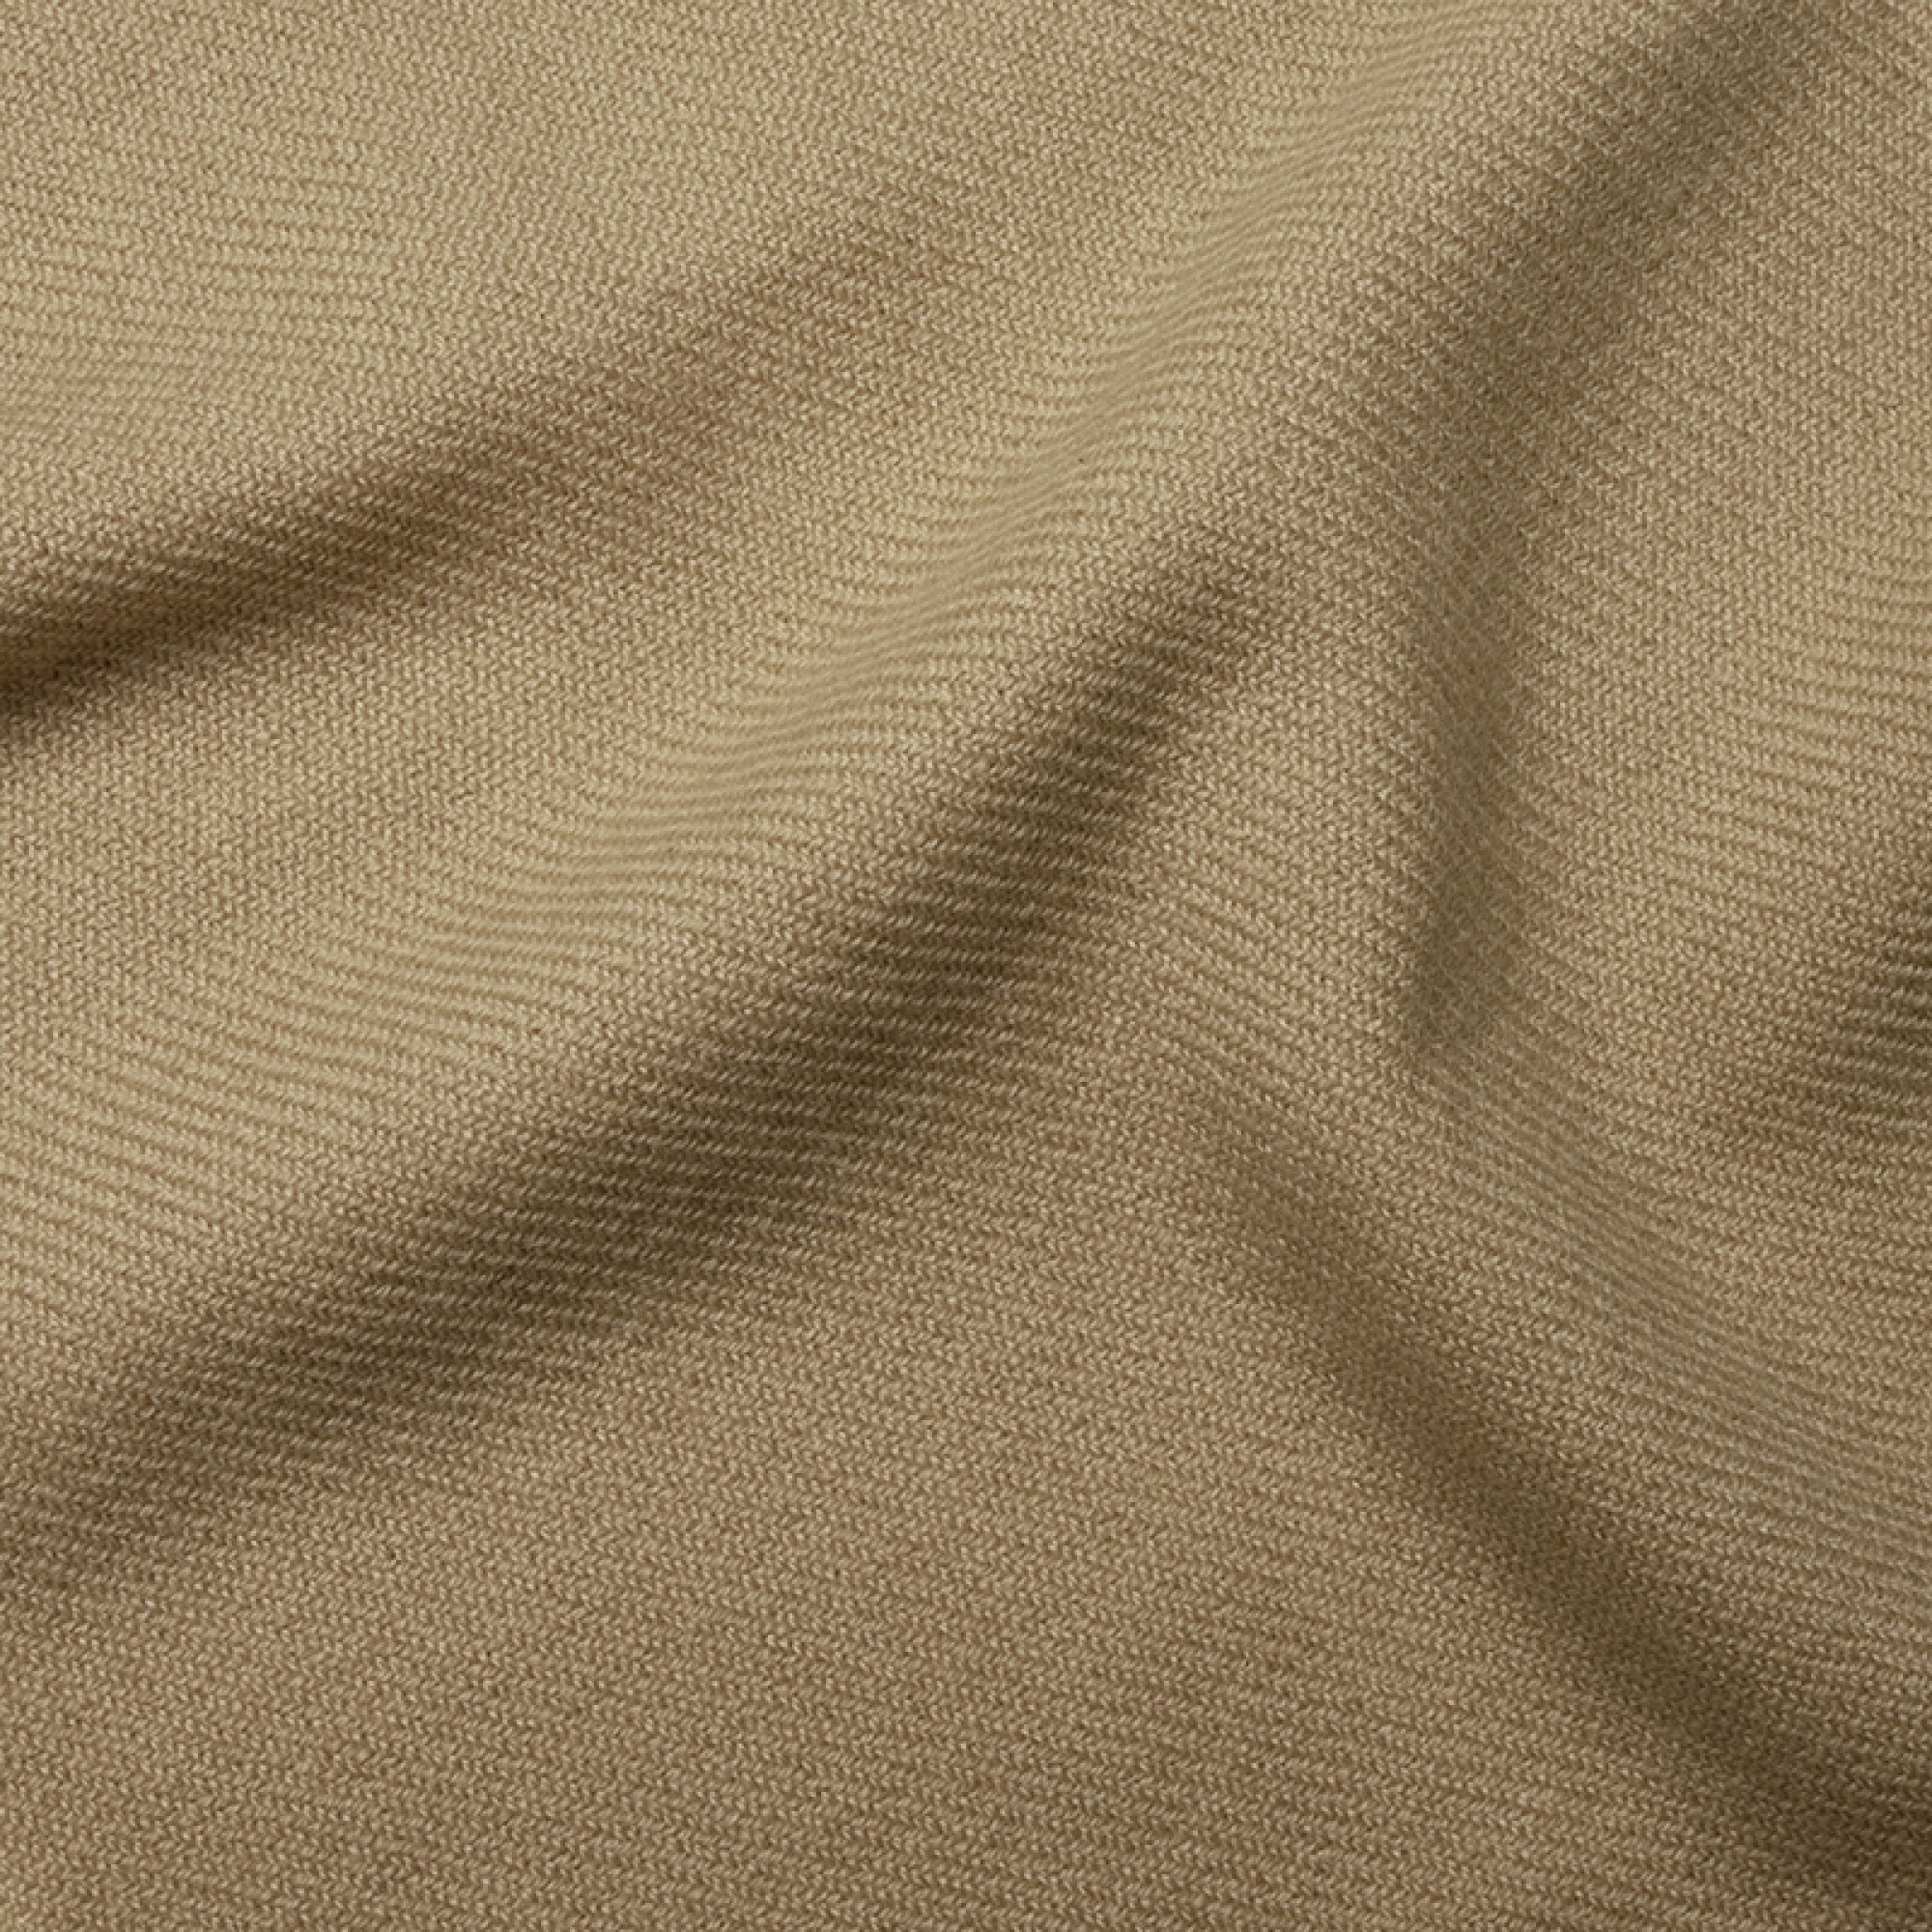 Cachemire accessoires couvertures plaids toodoo plain xl 240 x 260 beige 240 x 260 cm